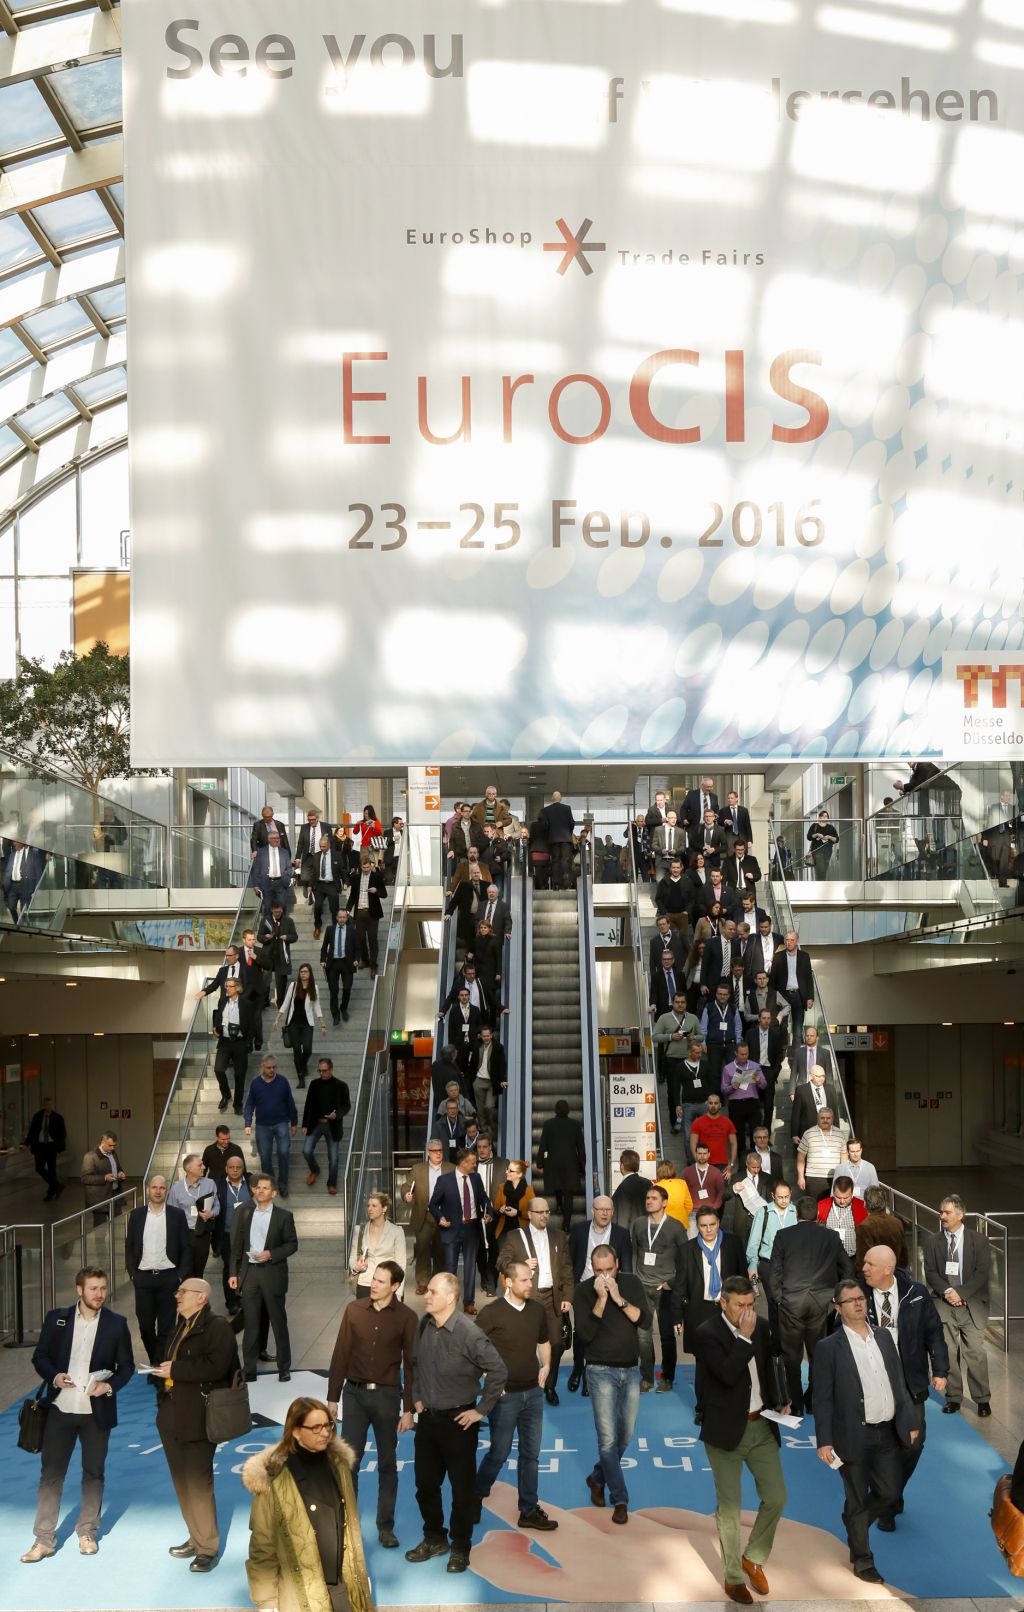 Eurocis Exhibition